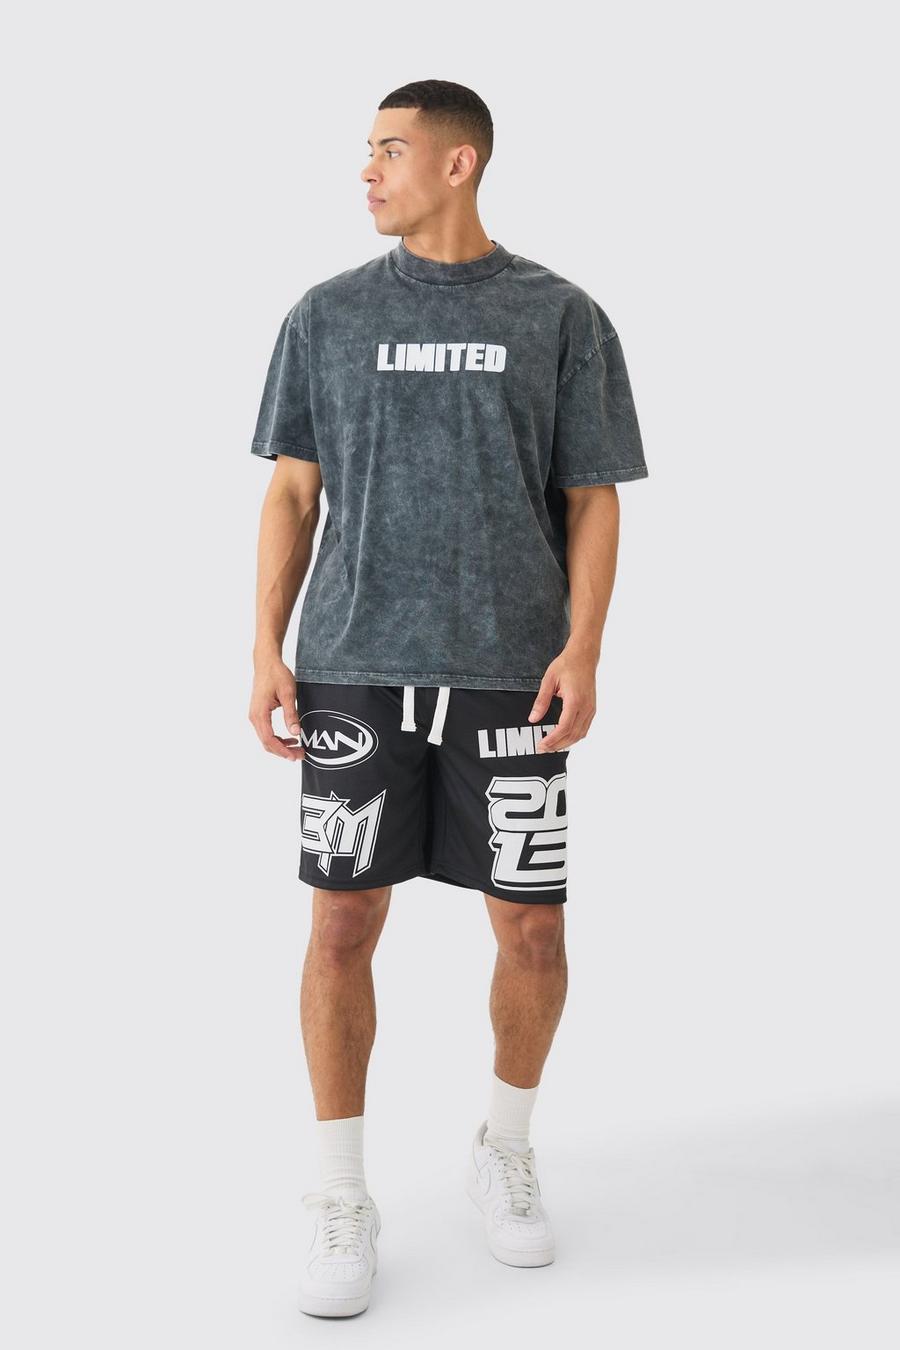 T-shirt oversize Limited in lavaggio acido & pantaloncini da basket in rete, Black